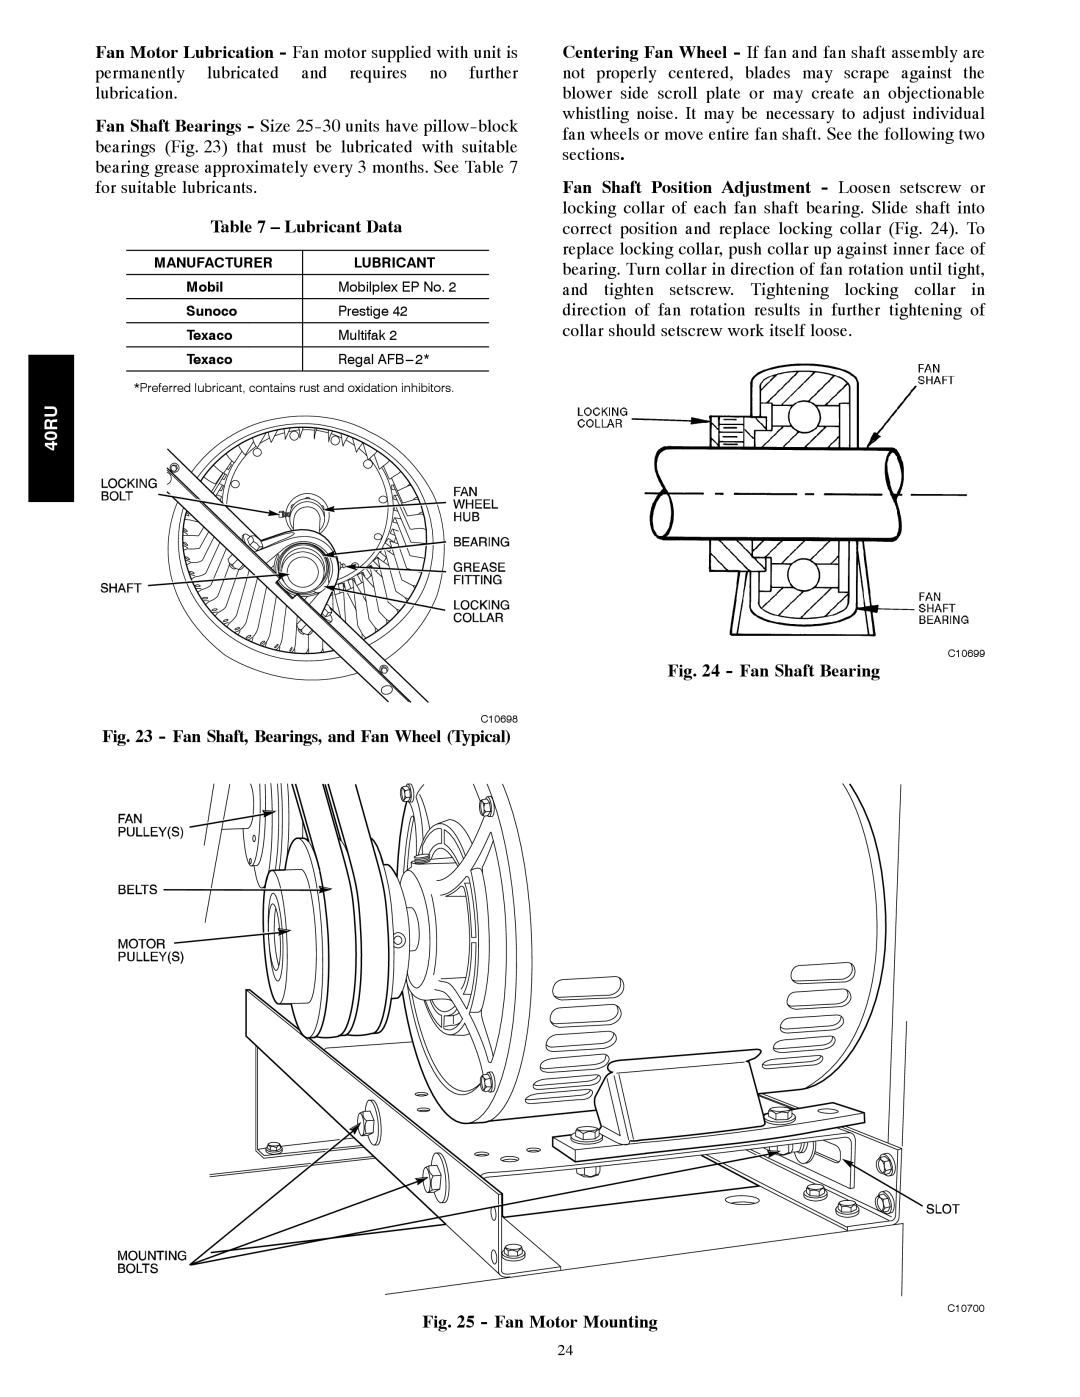 Carrier 40RU manual Lubricant Data, Fan Shaft Bearing, Fan Motor Mounting 